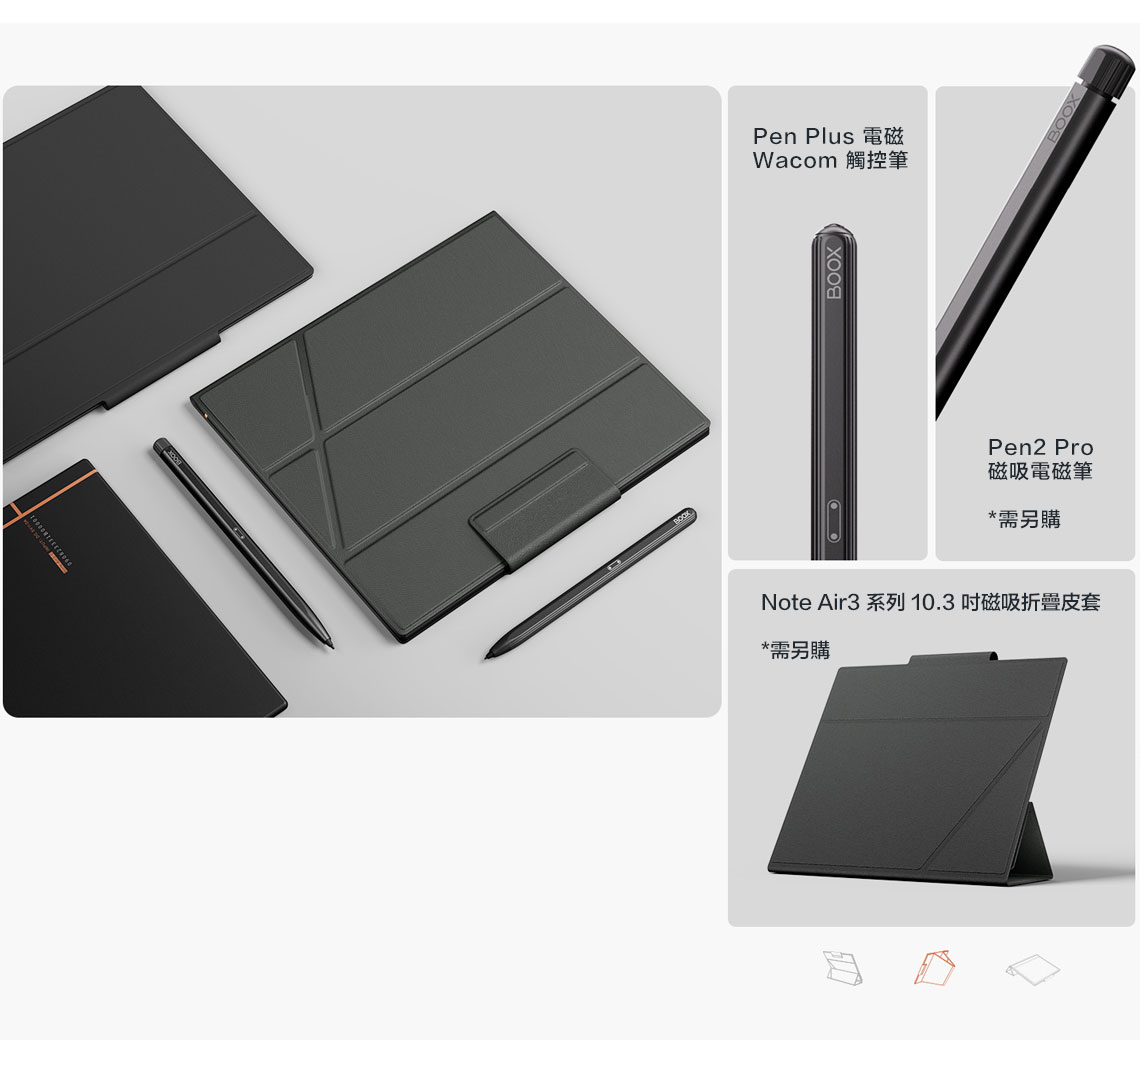 Pen Plus 電磁Wacom 觸控筆BOOXPen2 Pro磁吸電磁筆*需另購Note Air3 系列 10.3磁吸皮套*需另購